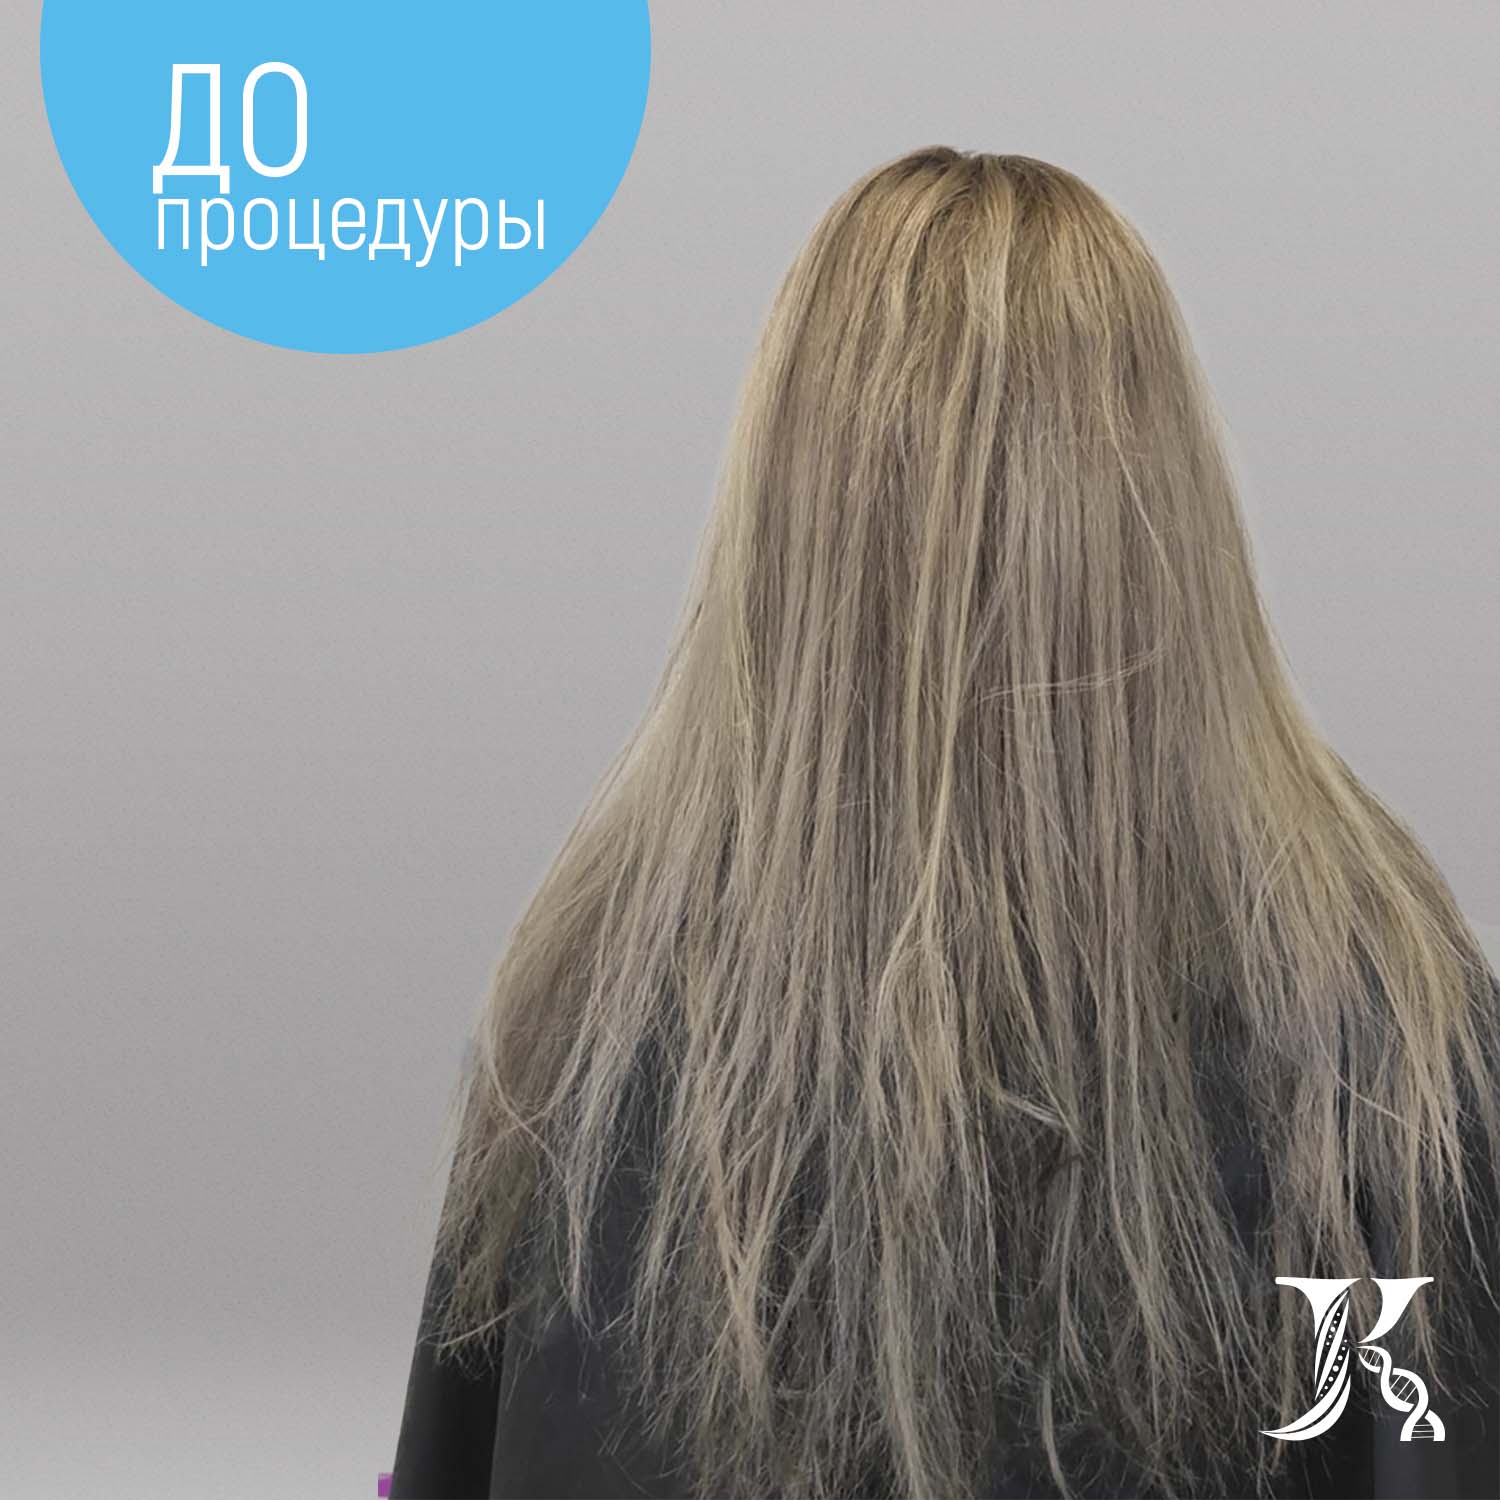 Кератин для выпрямления волос с мягким завитком JKeratin Plastic Hair Blonde, 500 мл